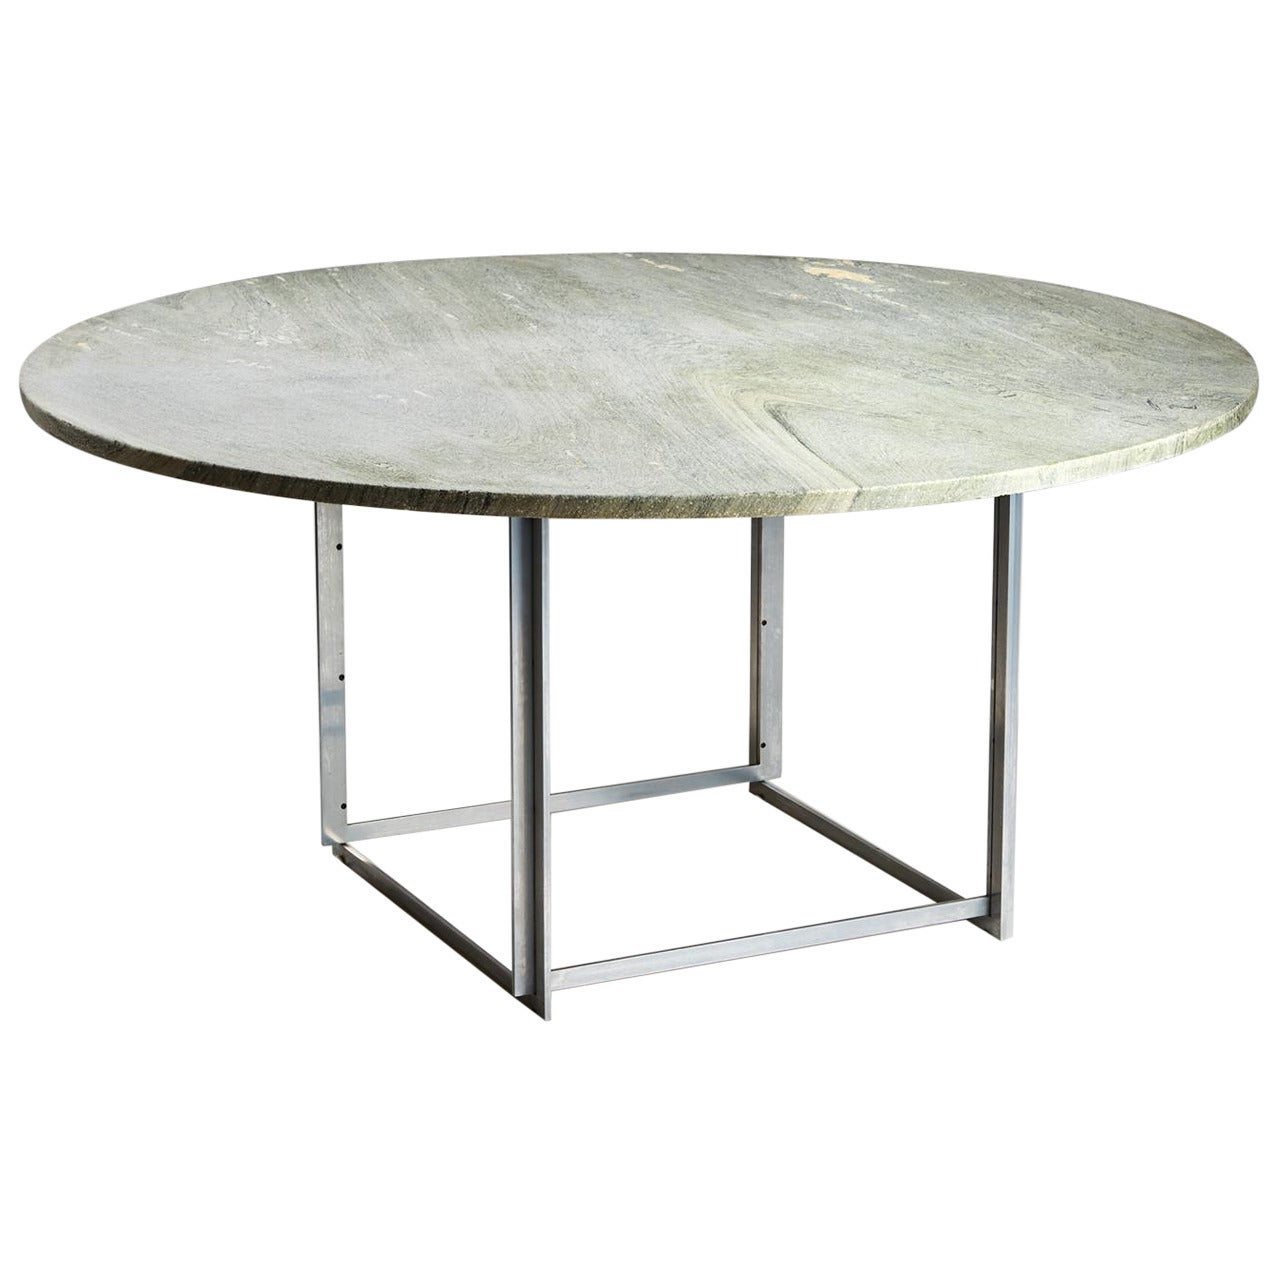 Dining Table "PK54" Designed by Poul Kjaerholm for E. Kold Christensen, 1963